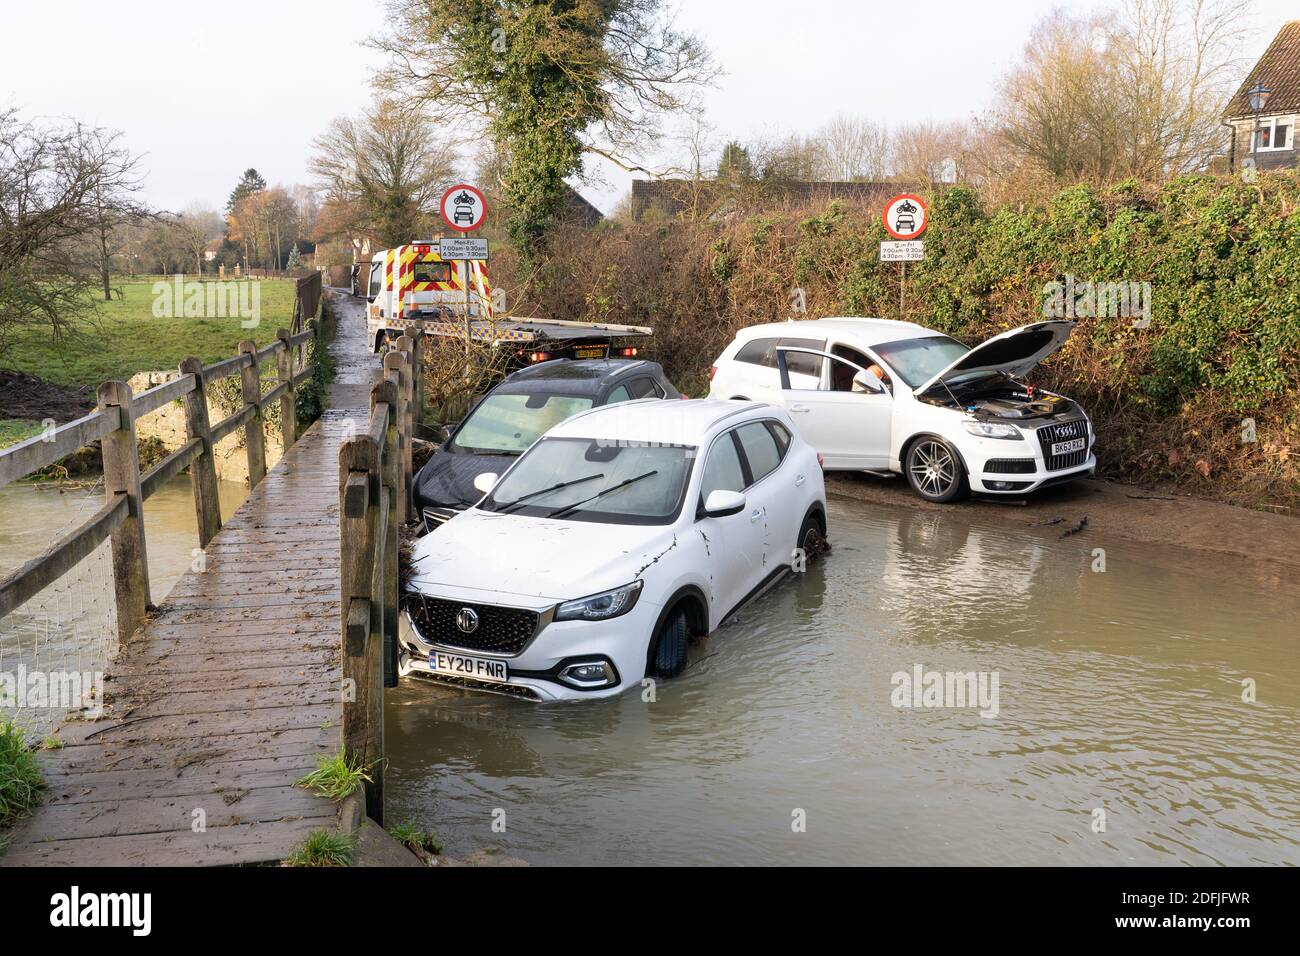 Ein Bergefahrzeug bereitet sich darauf vor, gestrandete überflutete Fahrzeuge an der ford in Much Hadham abzuschleppen. Hertfordshire Großbritannien. Dezember 2020 Stockfoto